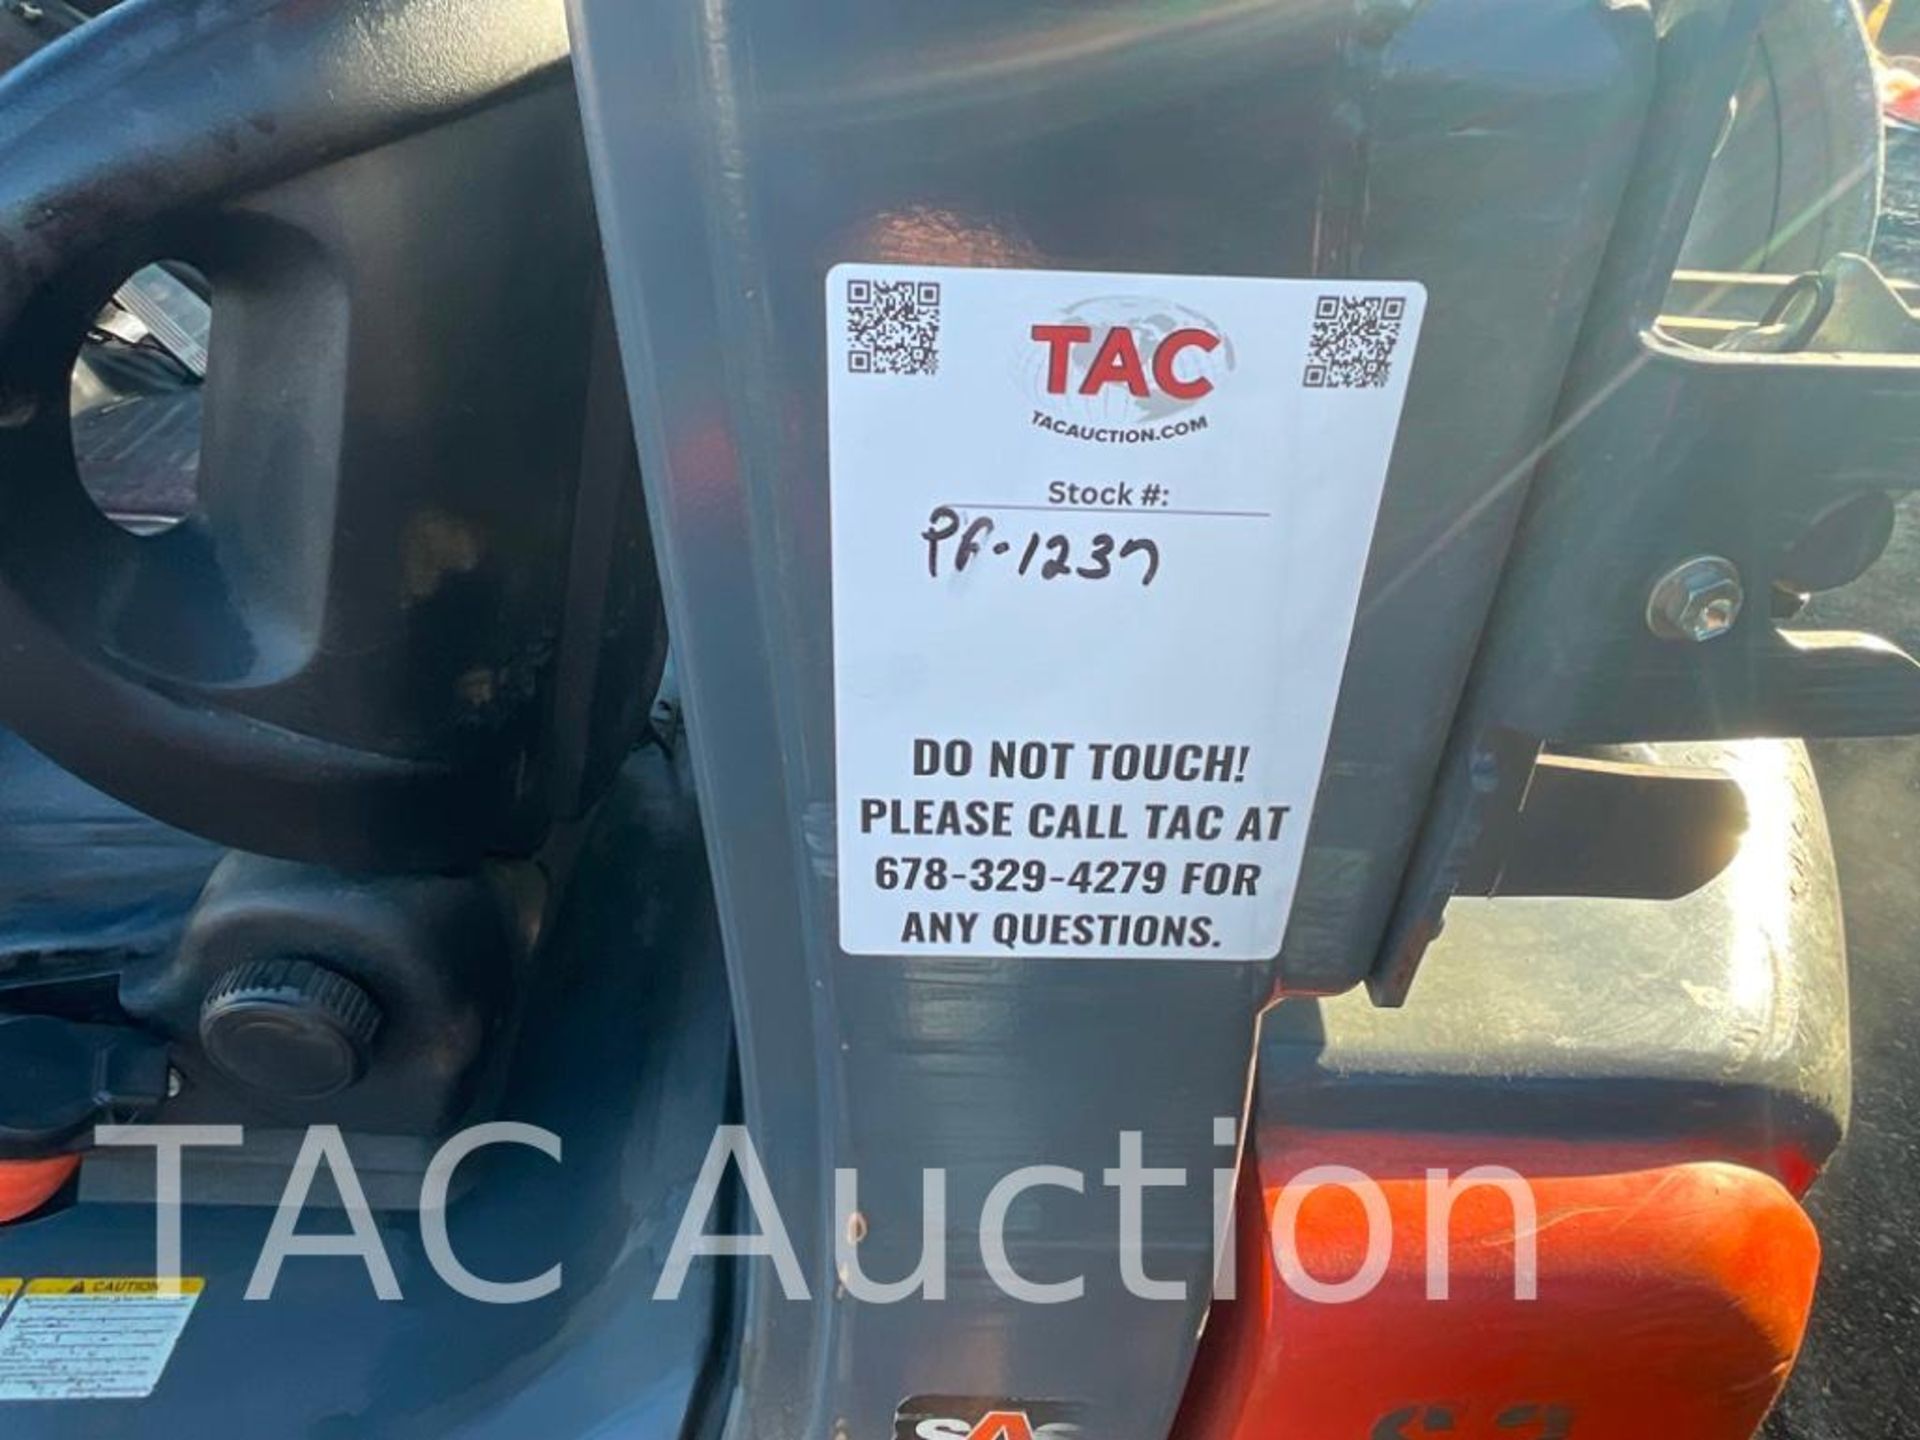 2018 Toyota 8FGCU25 5,000lb Forklift - Image 17 of 18